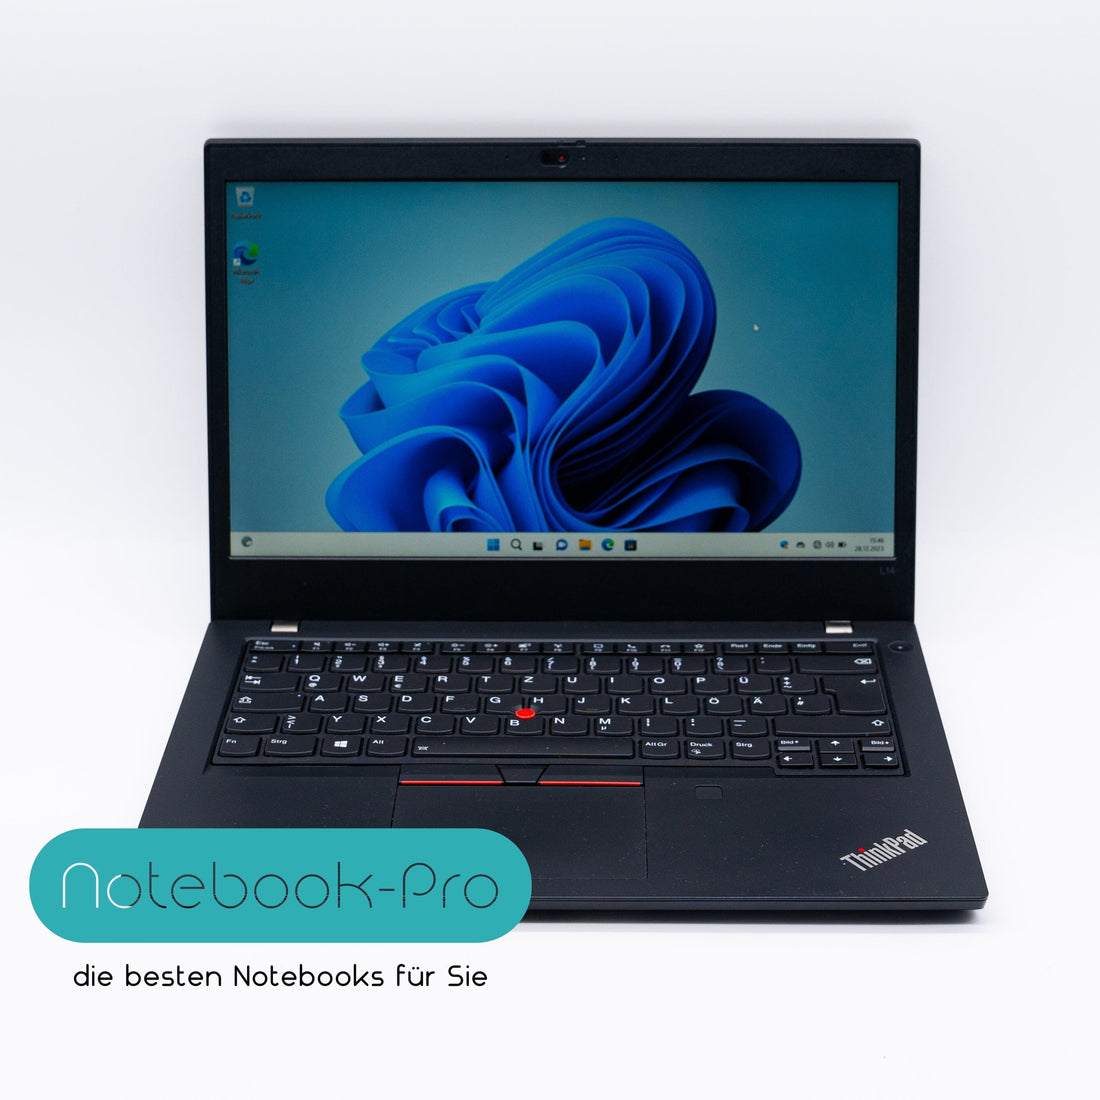 Lenovo ThinkPad E14 Gen 3 Amd Ryzen 5 Pro 5500U 512GB SSD 16GB RAM Win11 Laptops Notebook-Pro AMD Ryzen 5 5500U 16GB DDR4 512GB